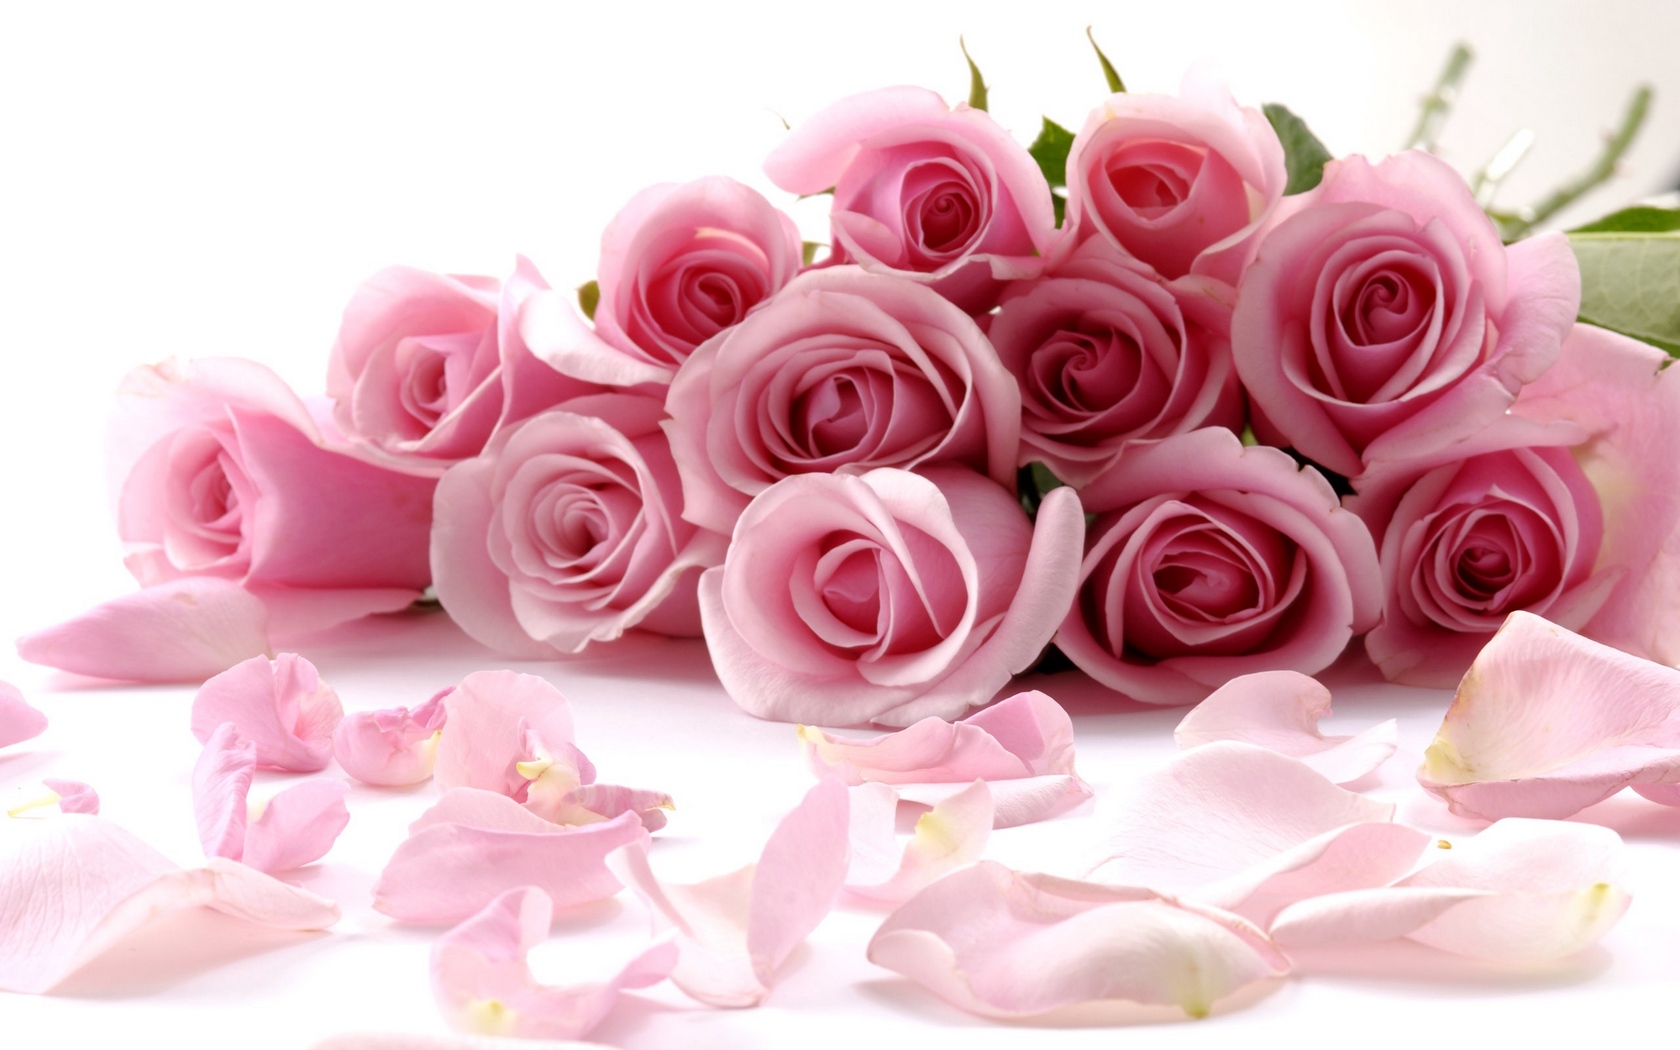 roses_flower_petals_83776_1680x1050.jpg